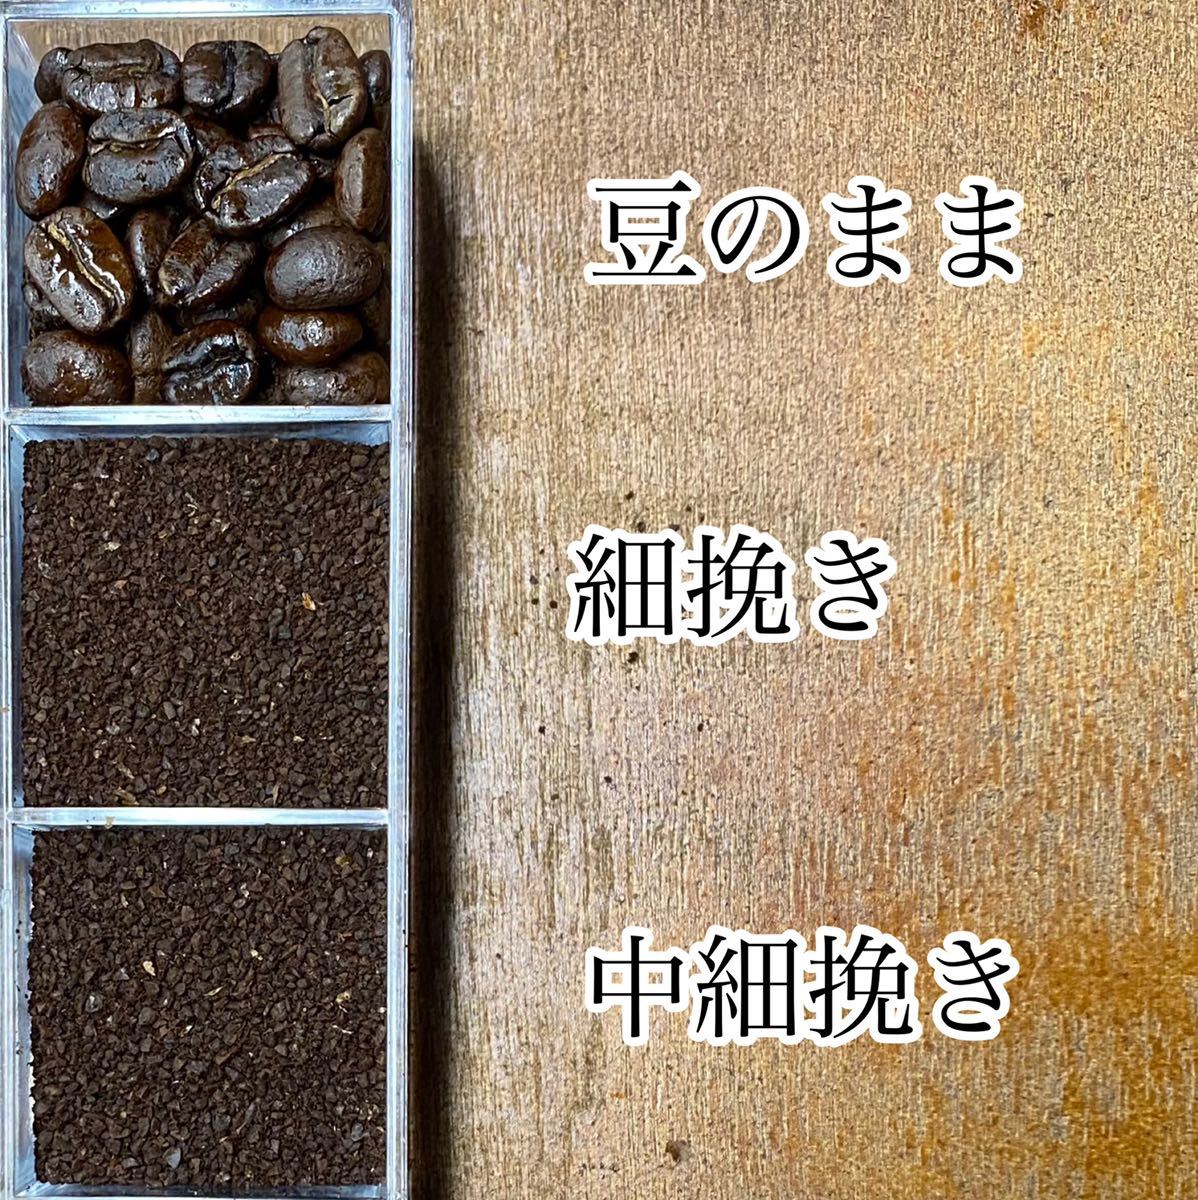 夏限定ブレンドセットA 自家焙煎コーヒー豆3種(100g×3個)